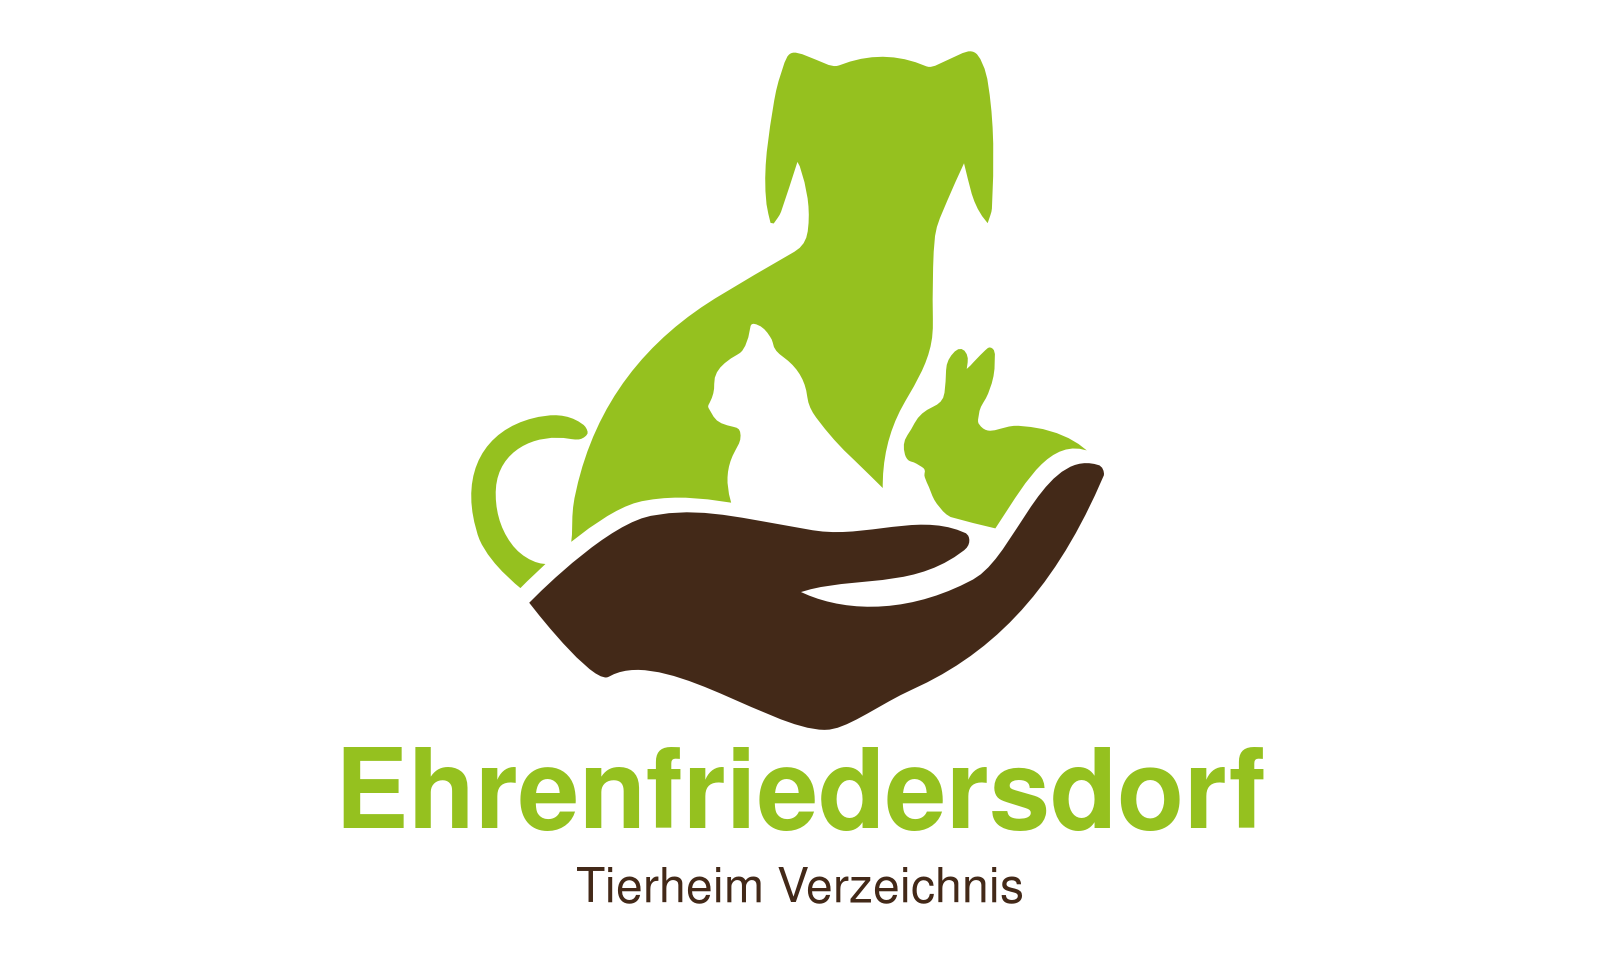 Tierheim Ehrenfriedersdorf